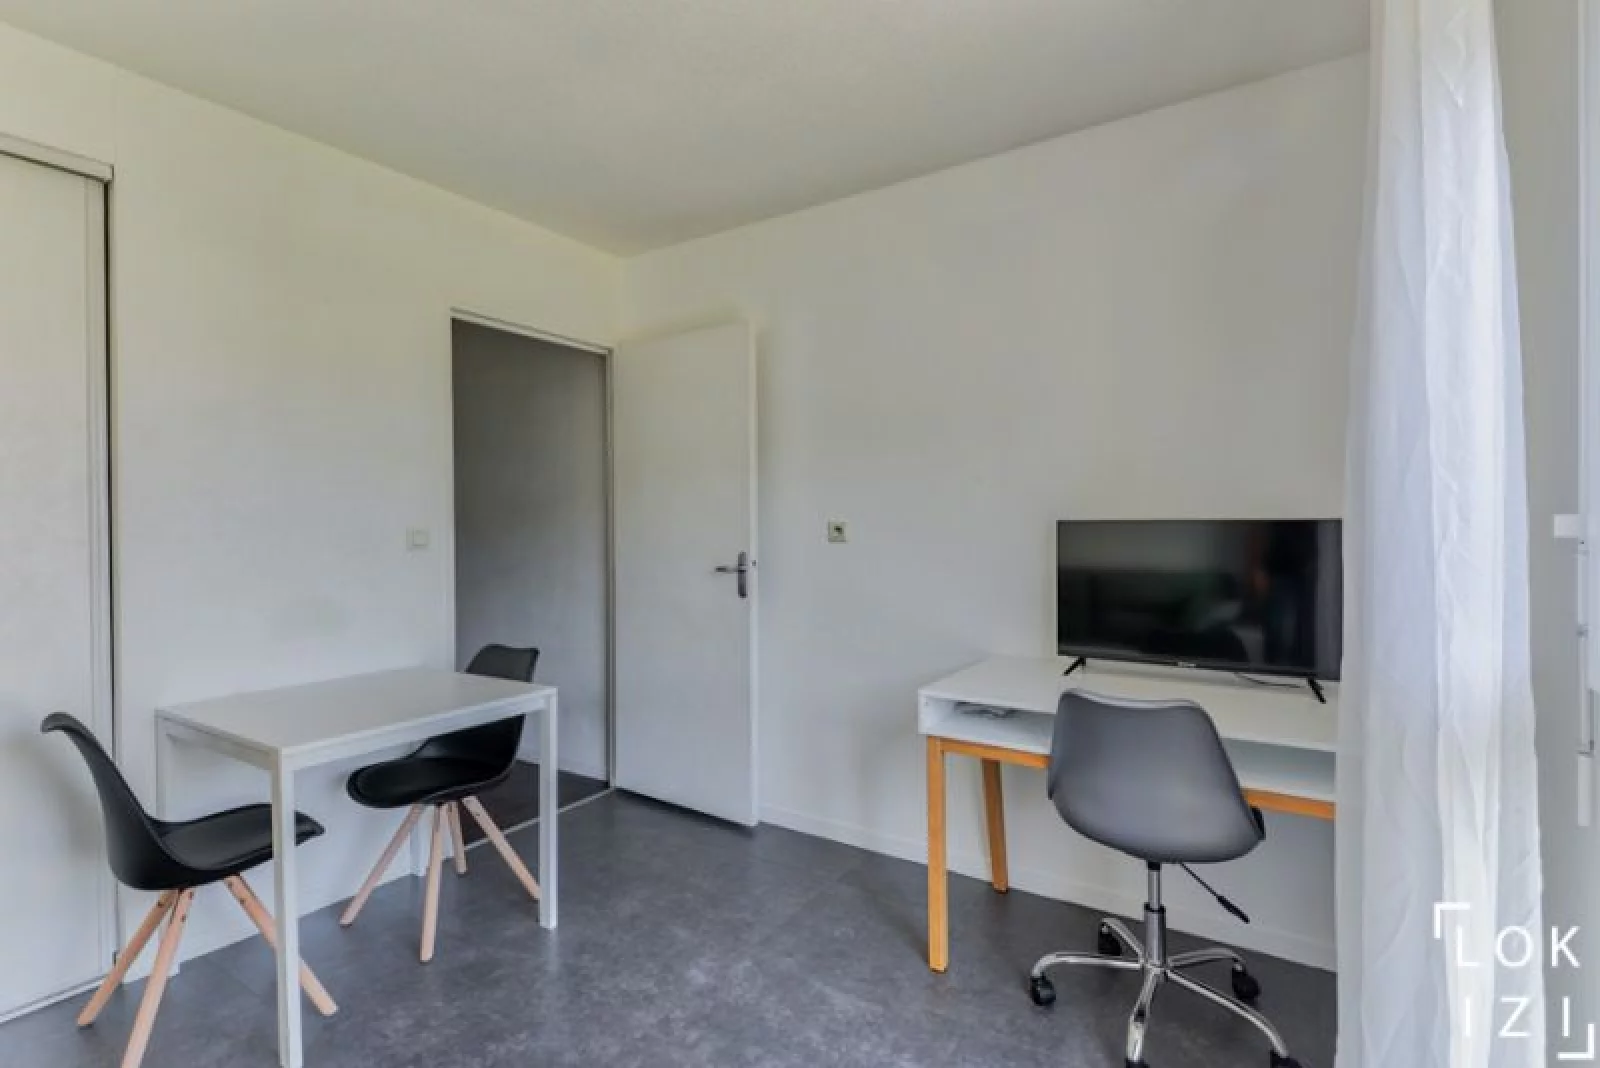 Location studio meublé 17m² (Paris Est / Bry-Sur-Marne)